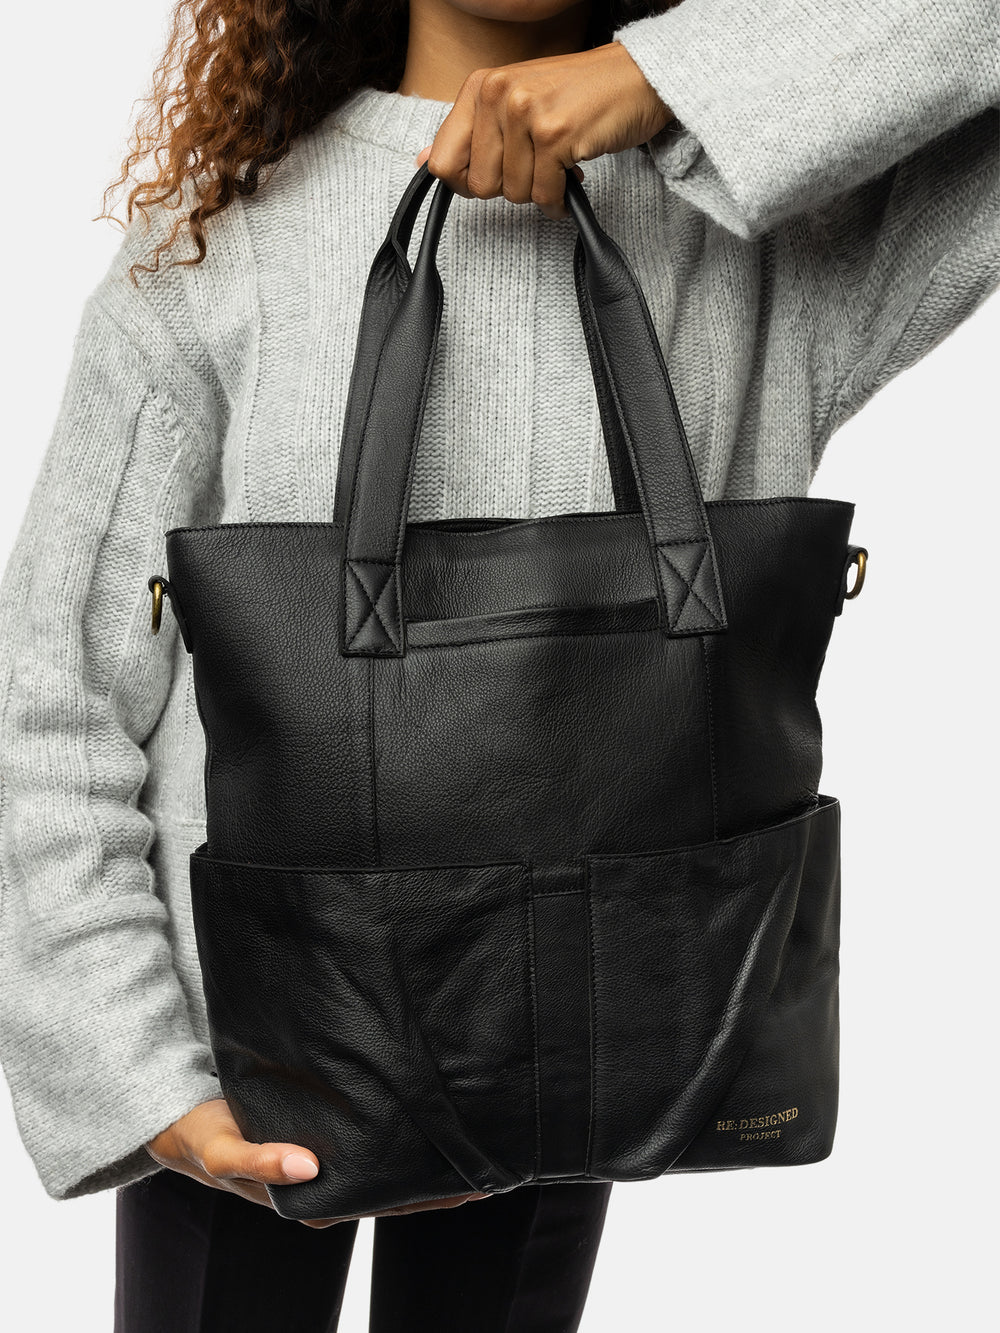 PROJECT Project 25 Shoulder bag Black